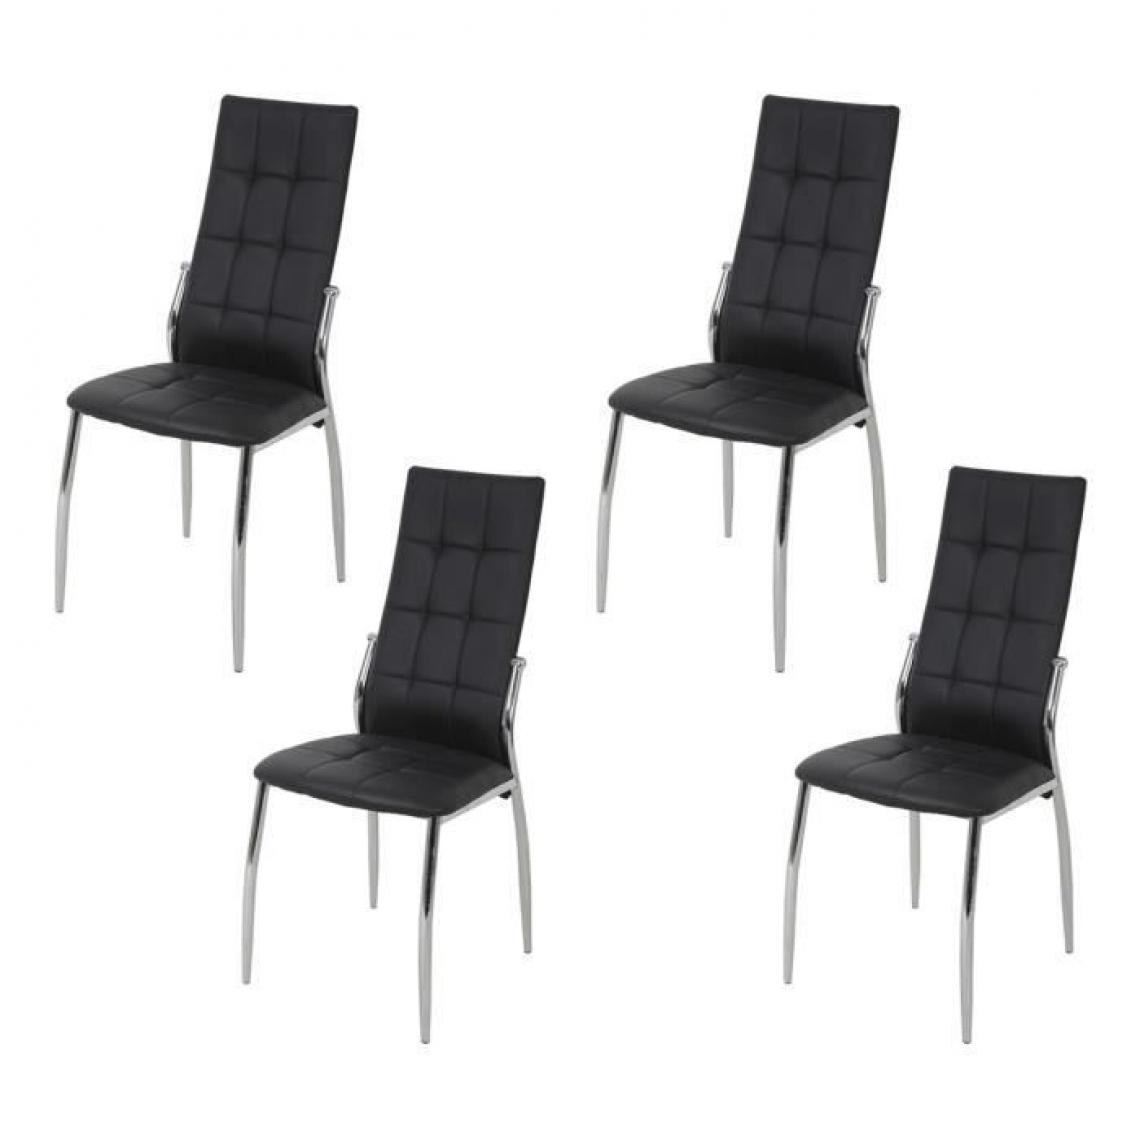 Cstore - GEORGE - lot de 4 chaises simili noir l 44xp 54xh 100 cm - Chaises de jardin